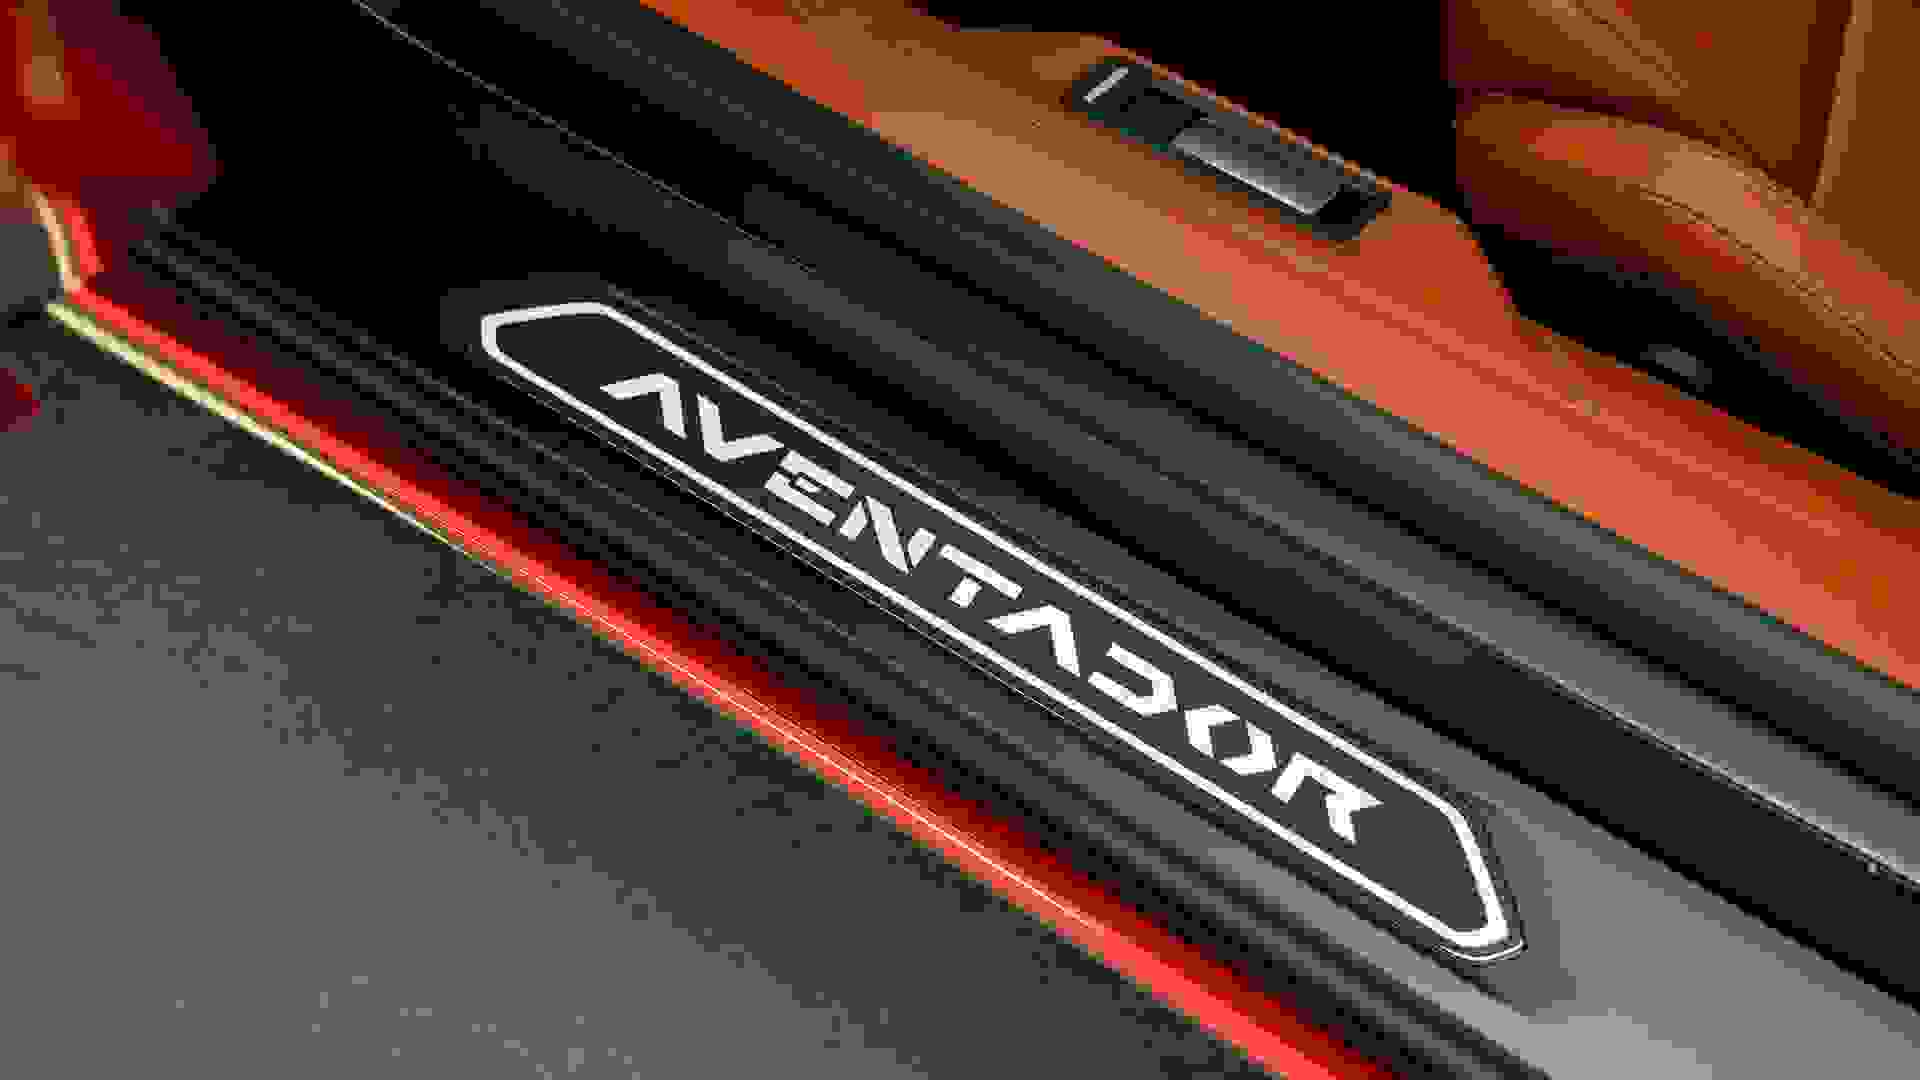 Lamborghini Aventador Photo ea151e0a-a3e4-459c-94be-e9ed632ade09.jpg